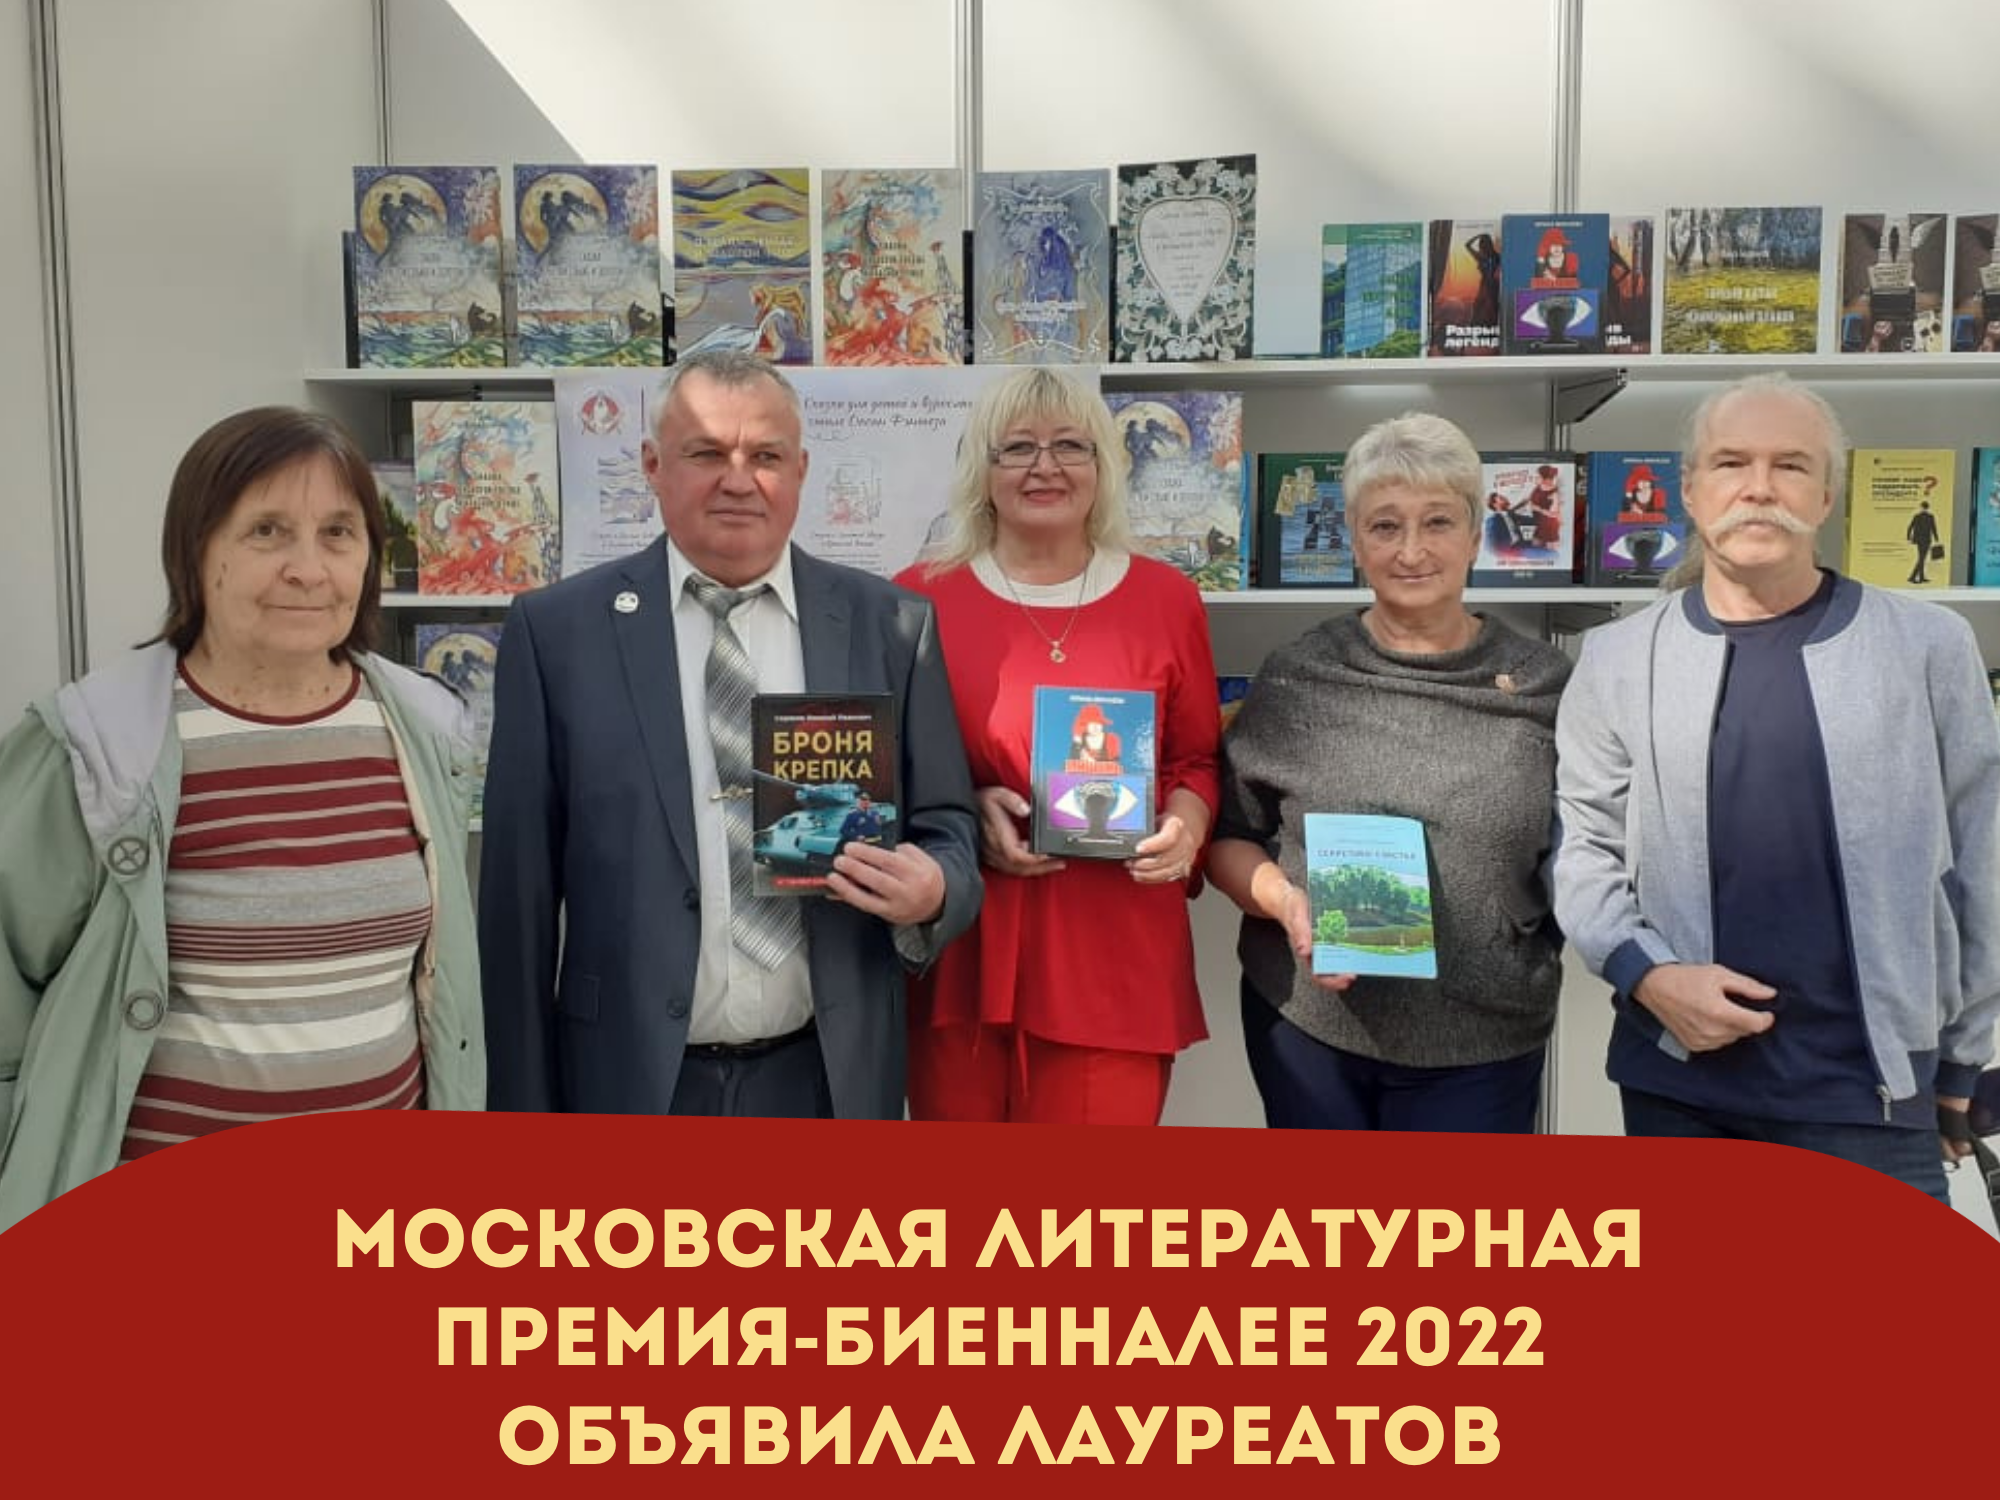 Церемония награждения лауреатов Московской литературной премии-биеннале – 2022 состоялась